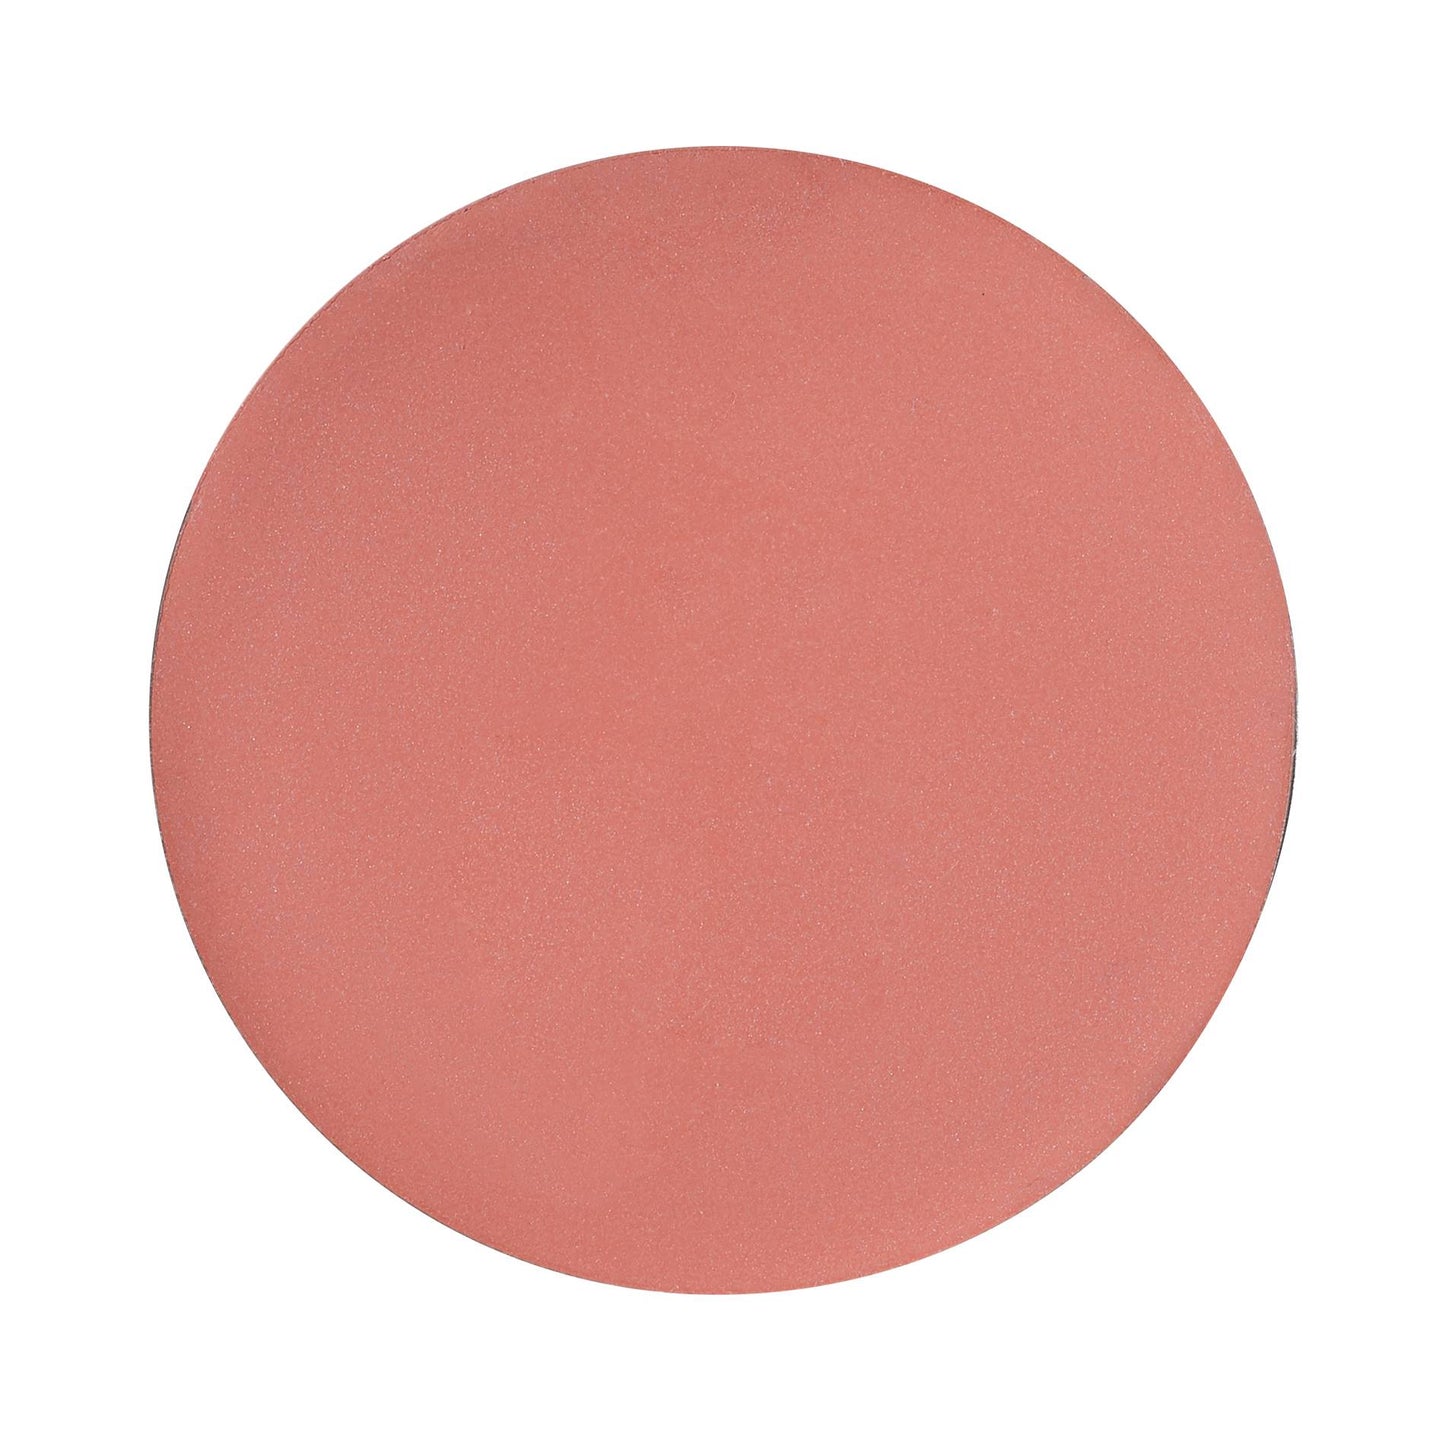 Rose Inc Hydrangea Cream Blush Refillable Cheek and Lip Color Refill